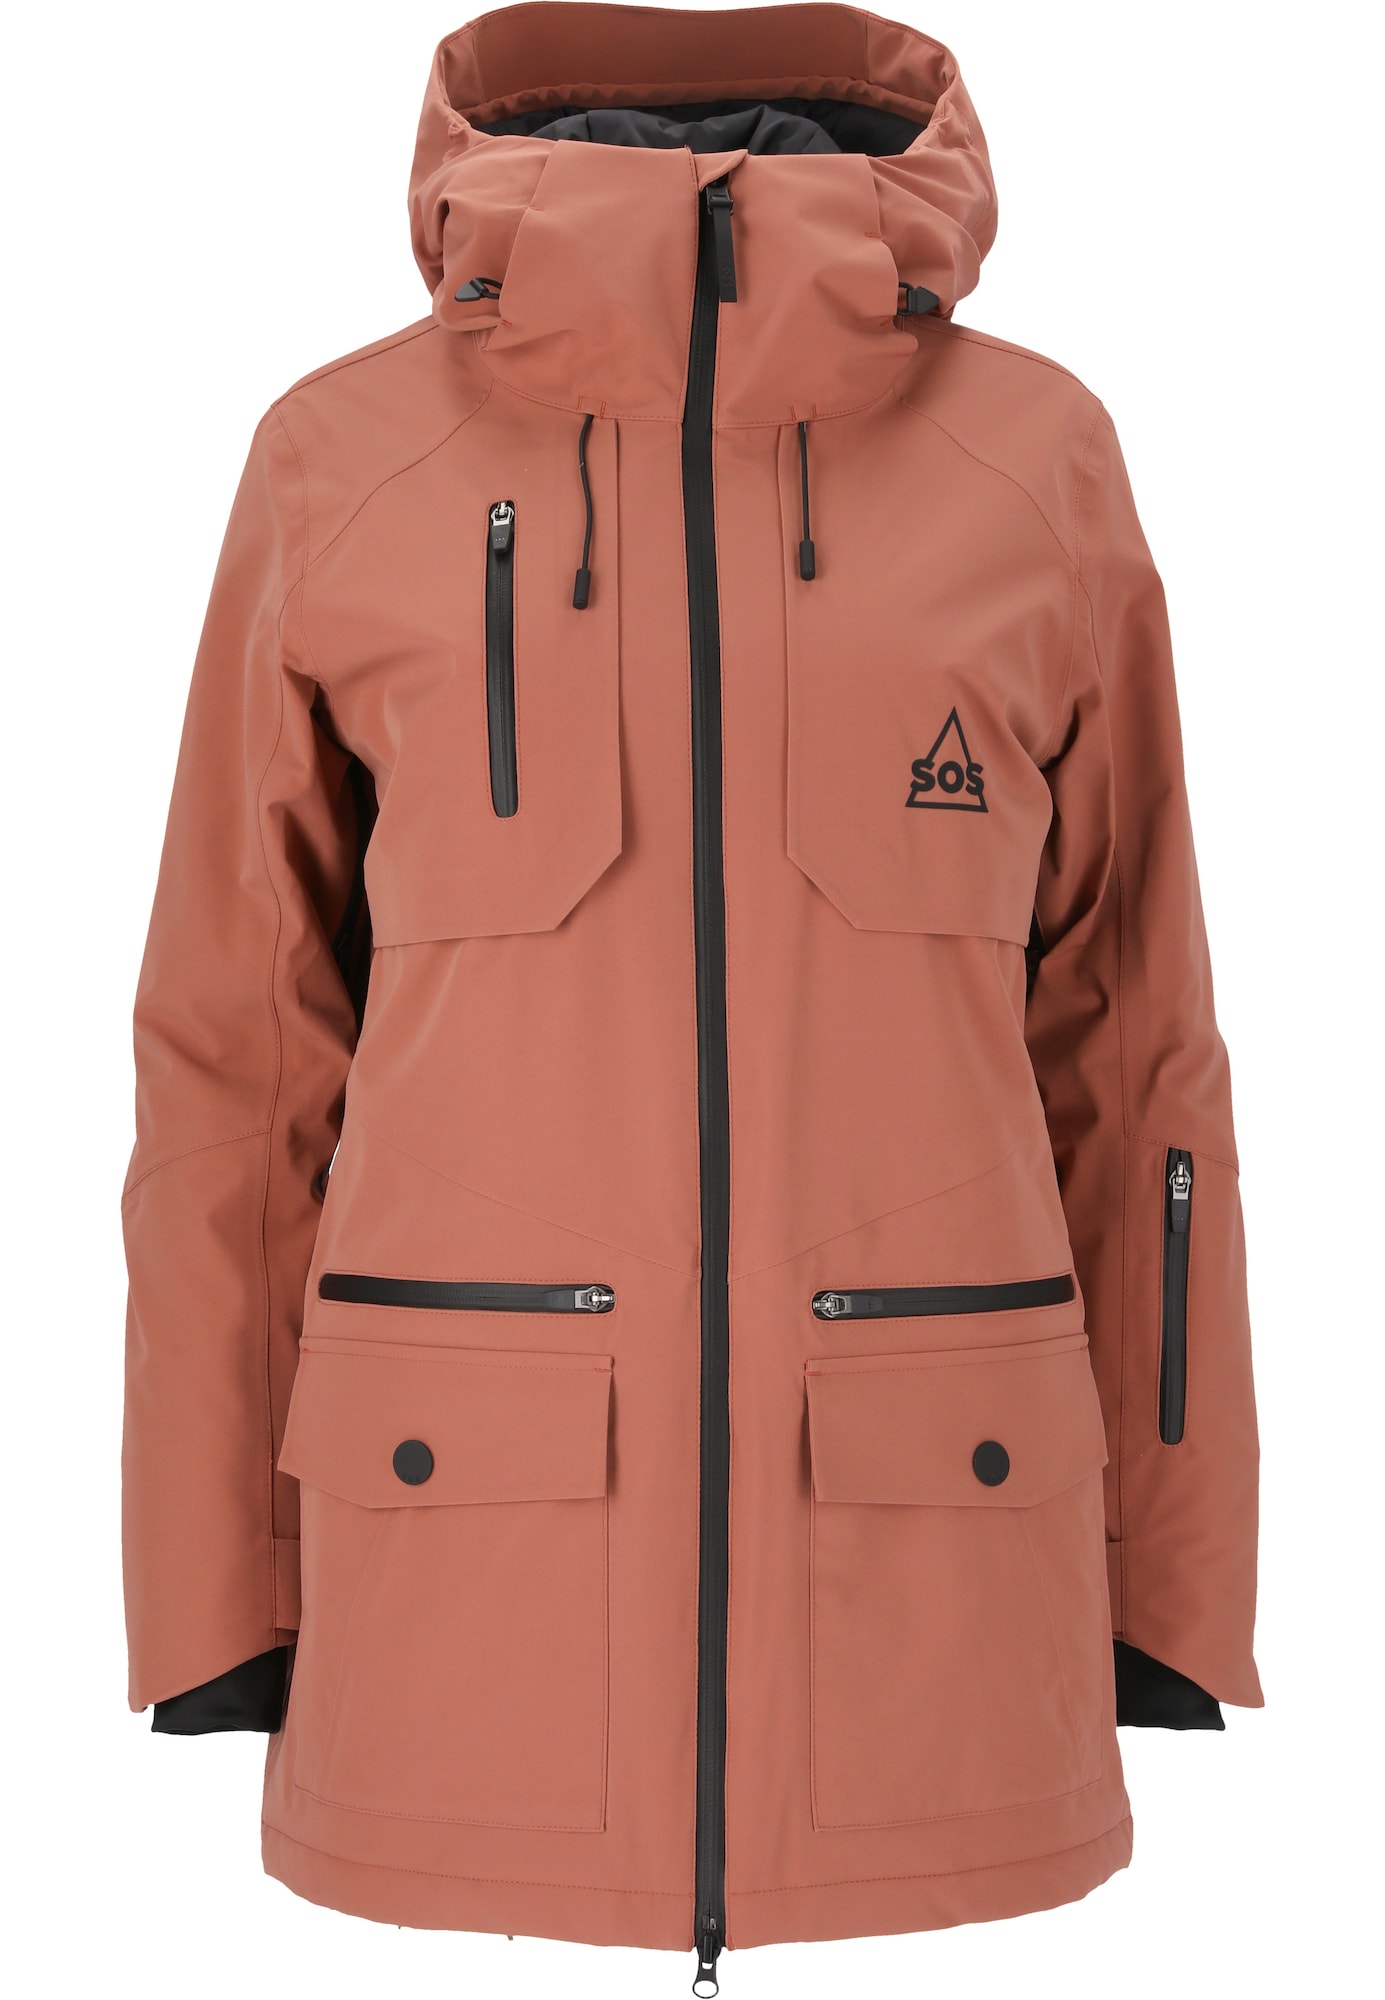 Zimná bunda Aspen staroružová SOS